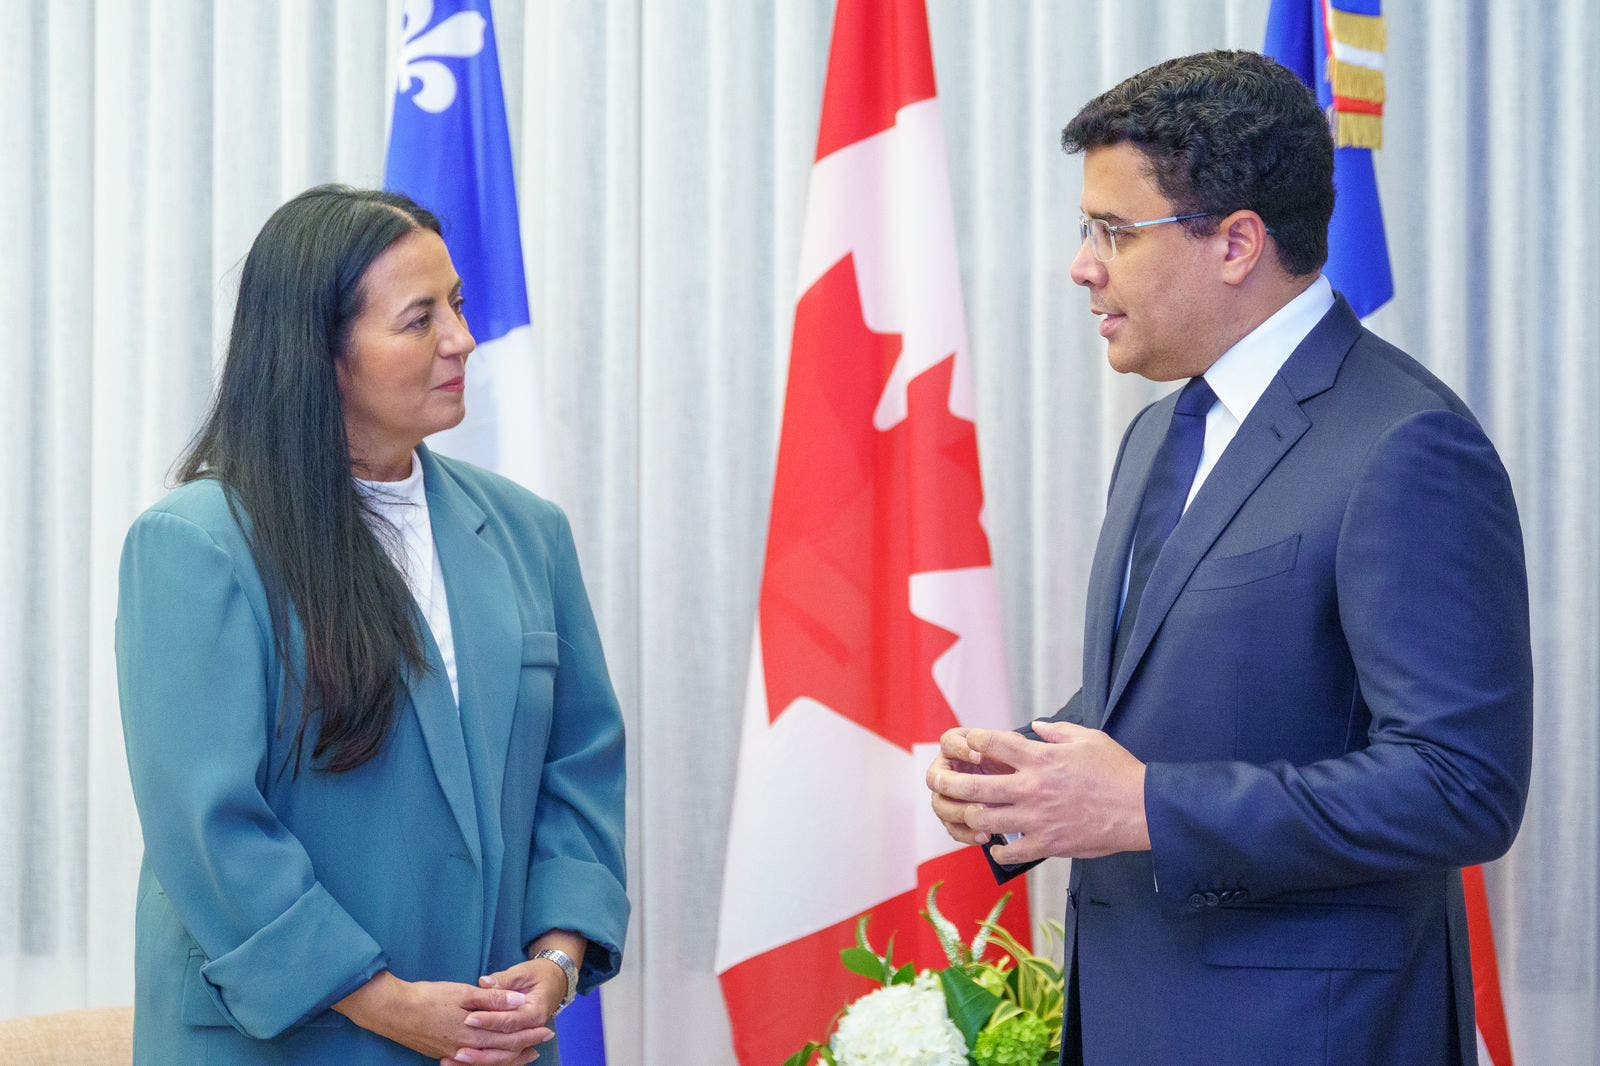 Ministros de Turismo RD y Canadá estrechan relaciones